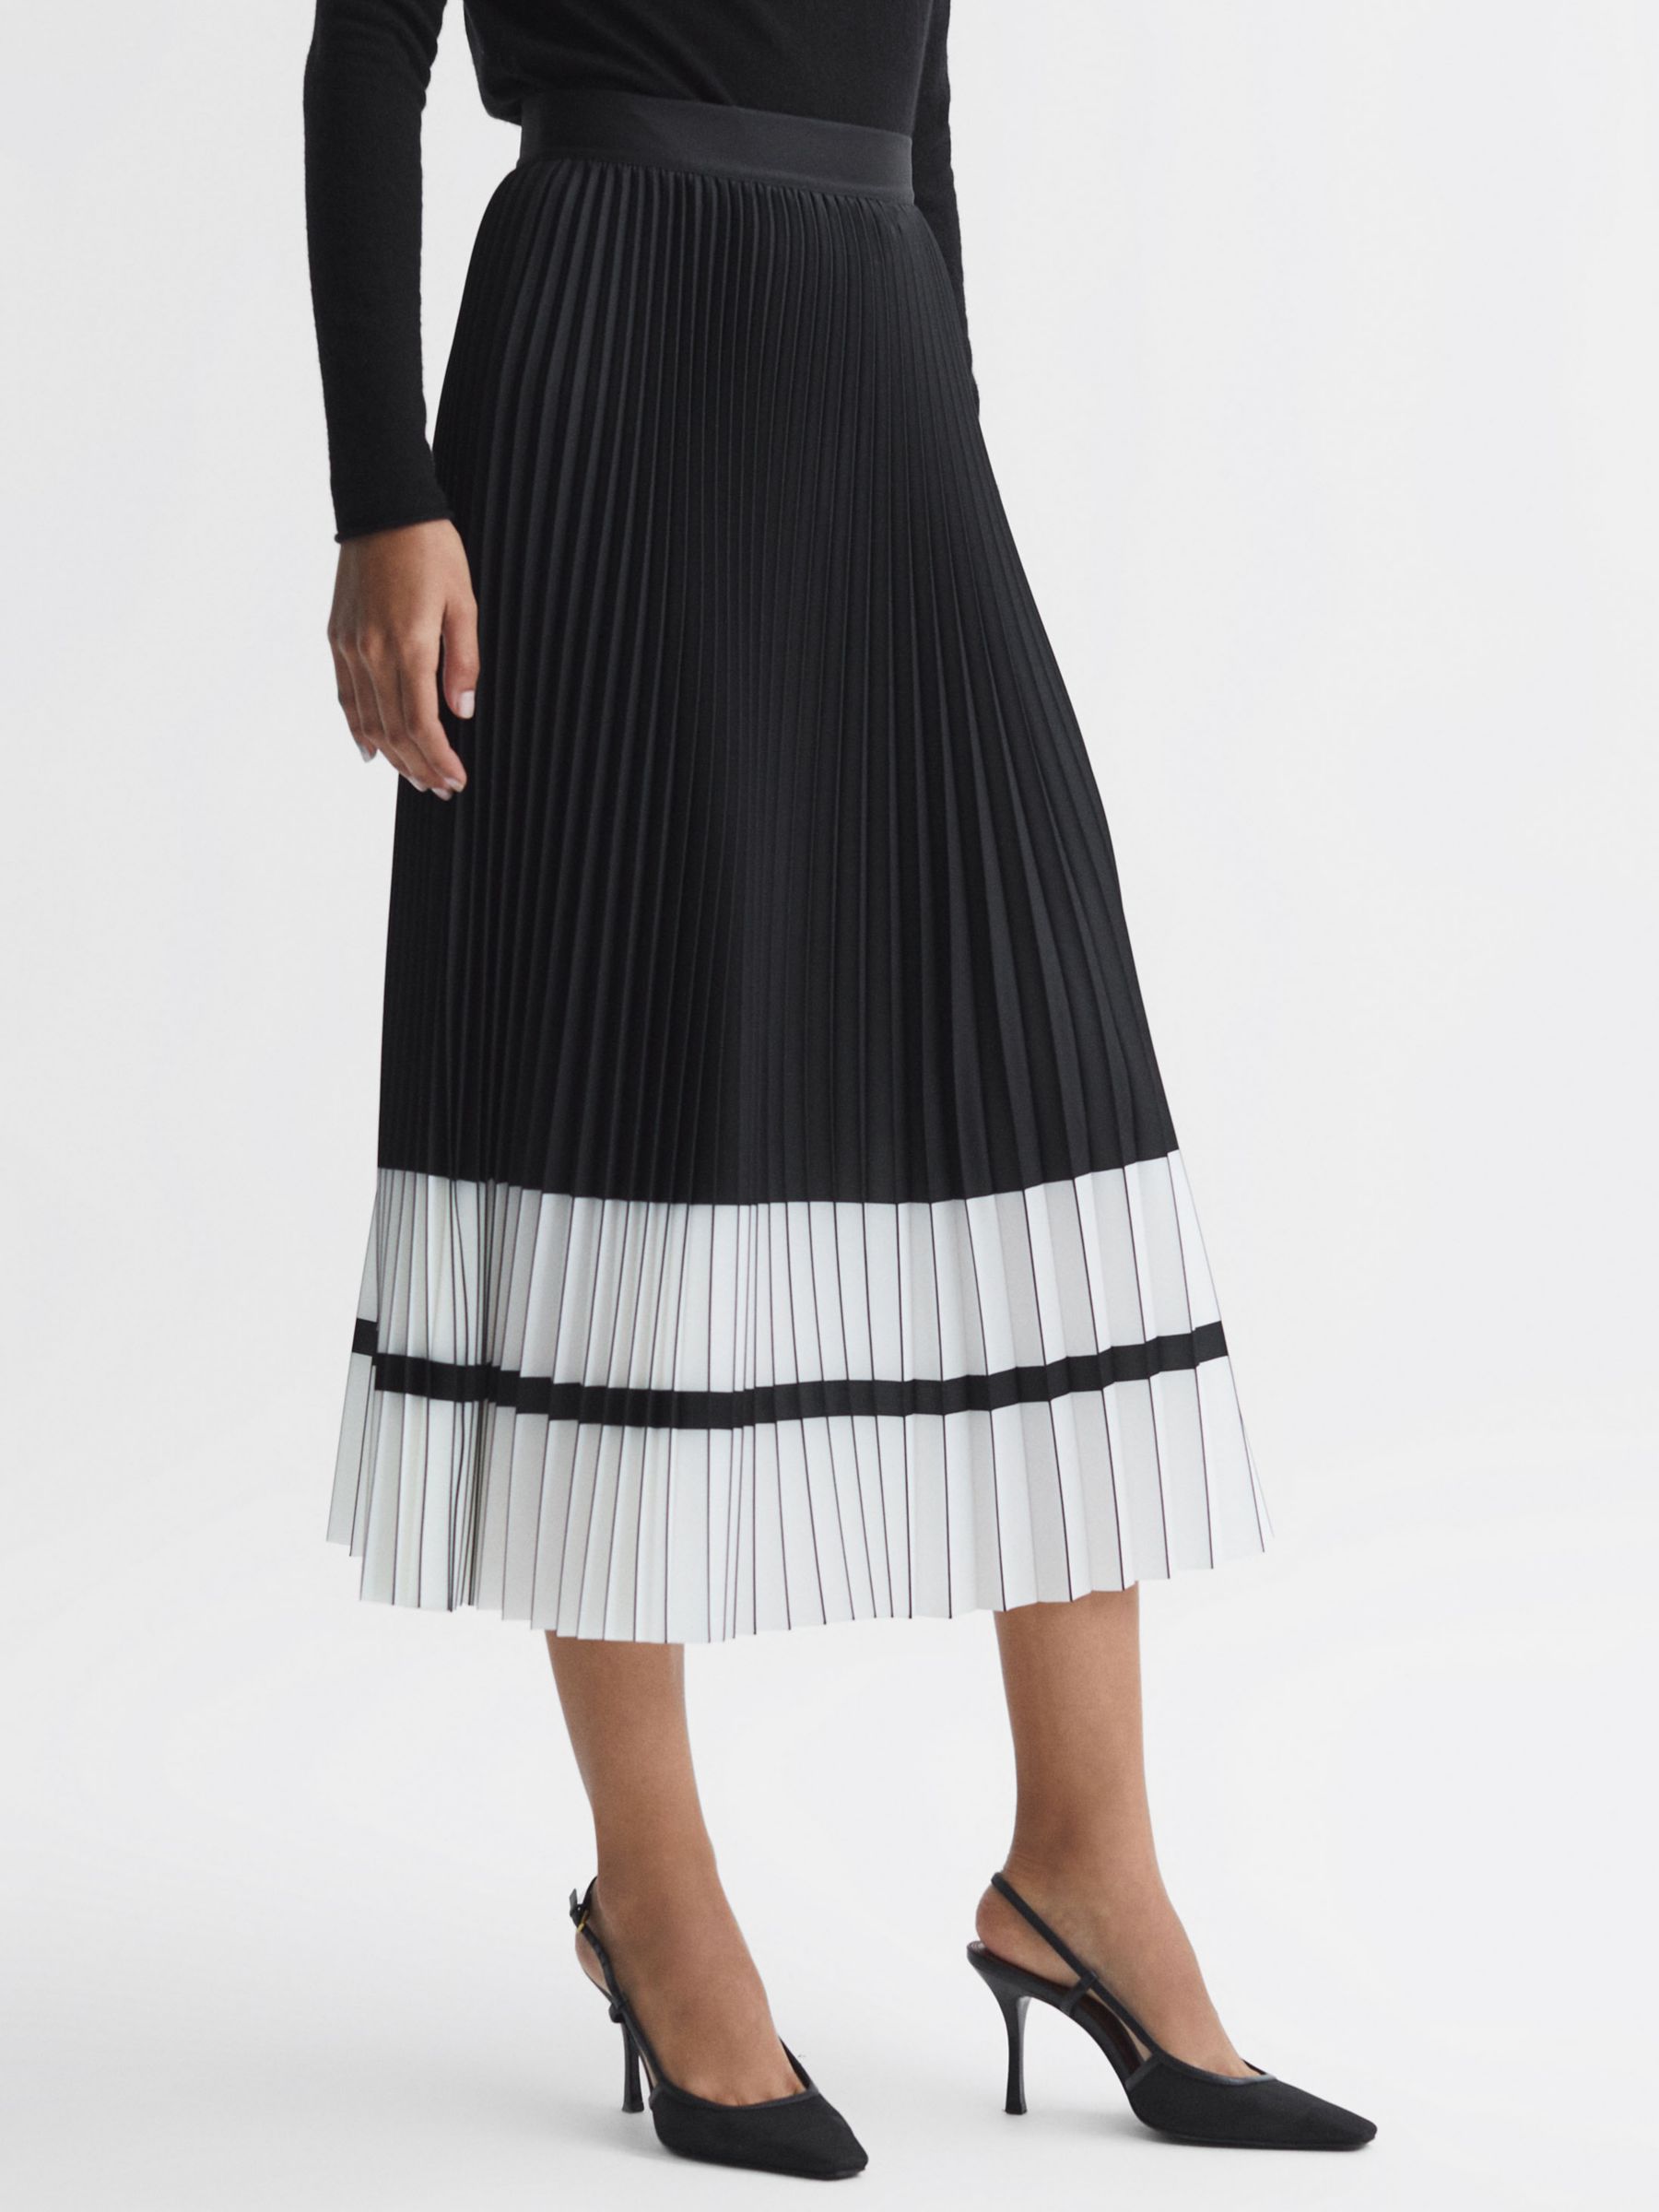 Reiss Marie Pleated Colour Block Midi Skirt, Black/White, 14